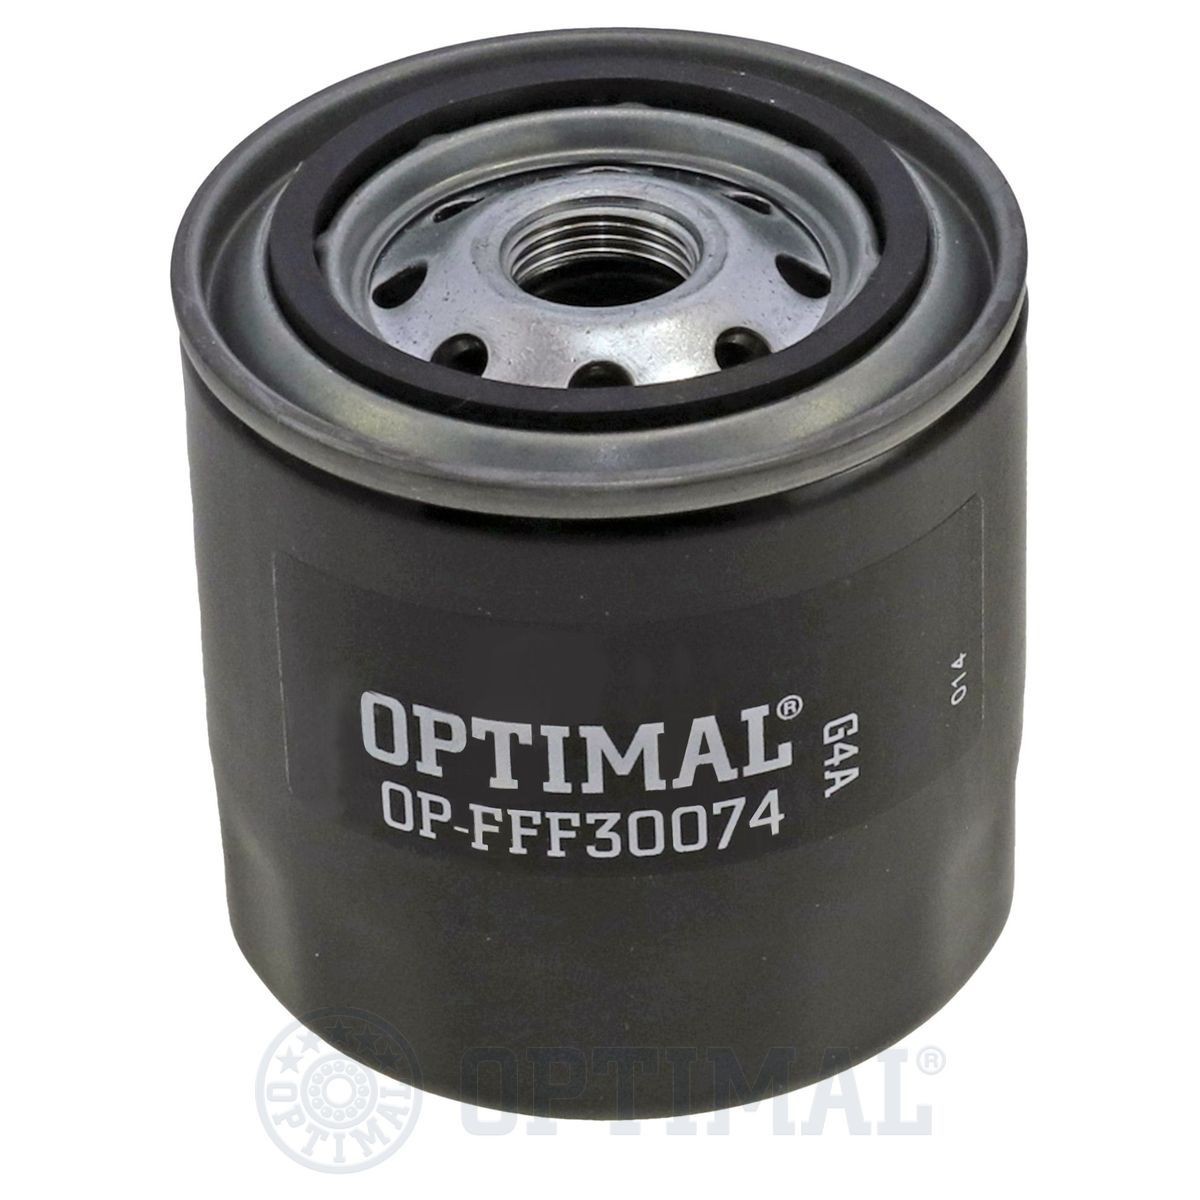 OPTIMAL OP-FFF30074 Fuel filter 4265247